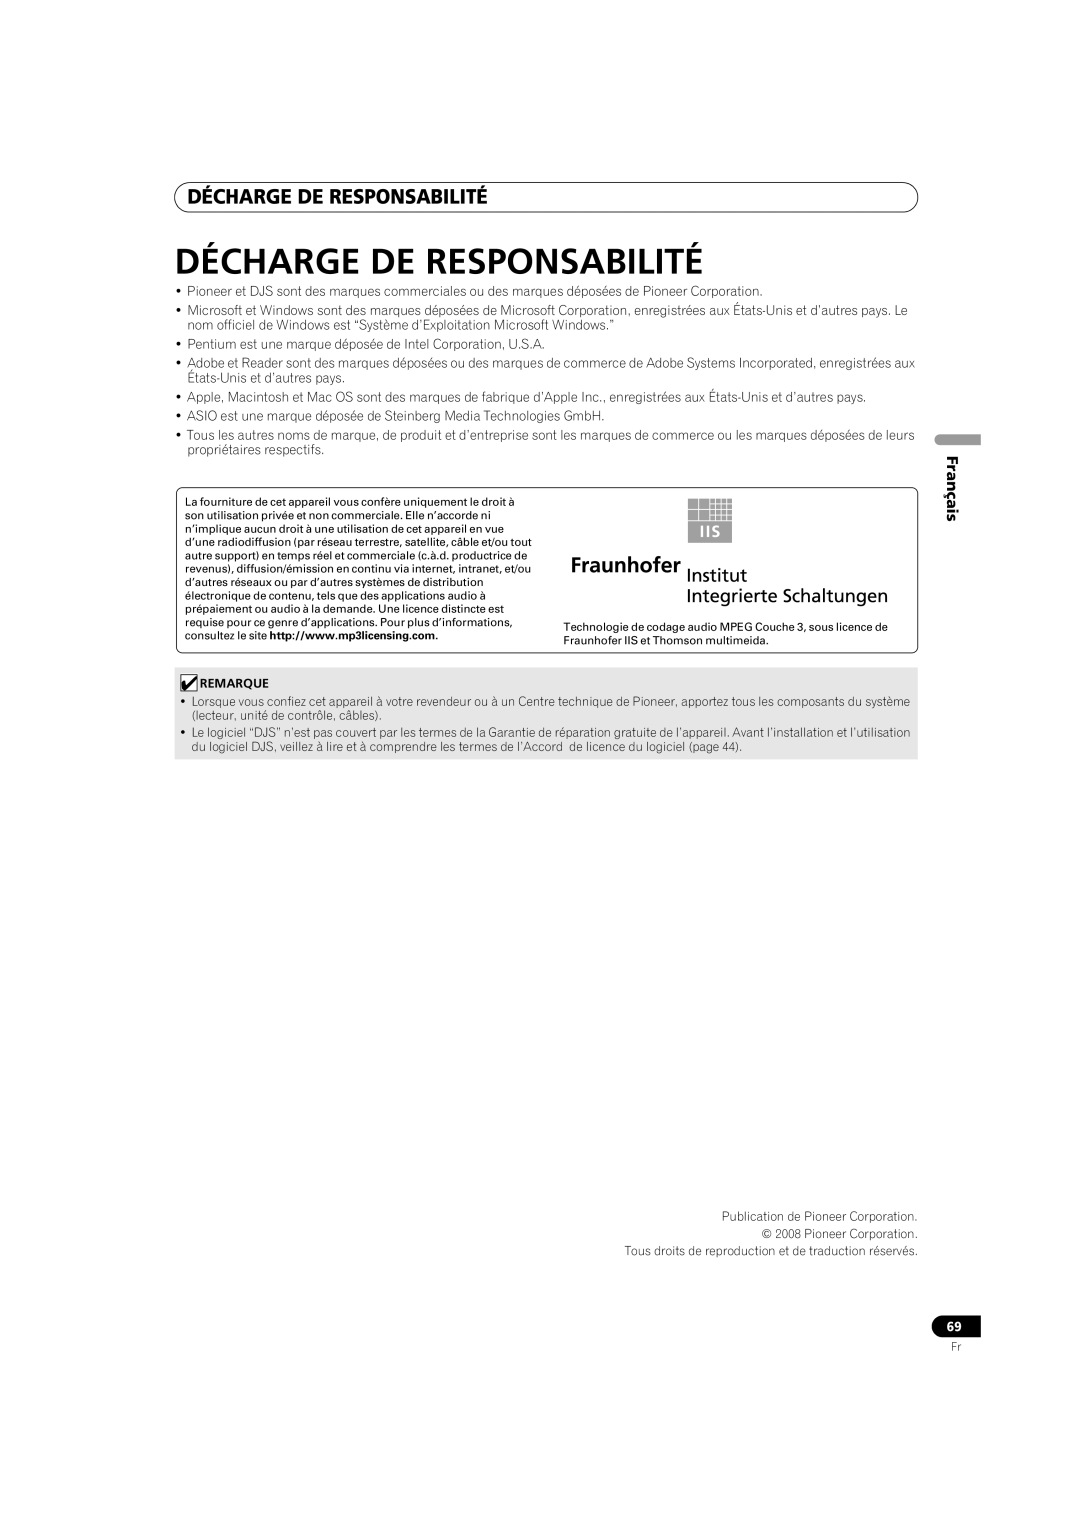 Pioneer MEP-7000 operating instructions Décharge De Responsabilité, Français 